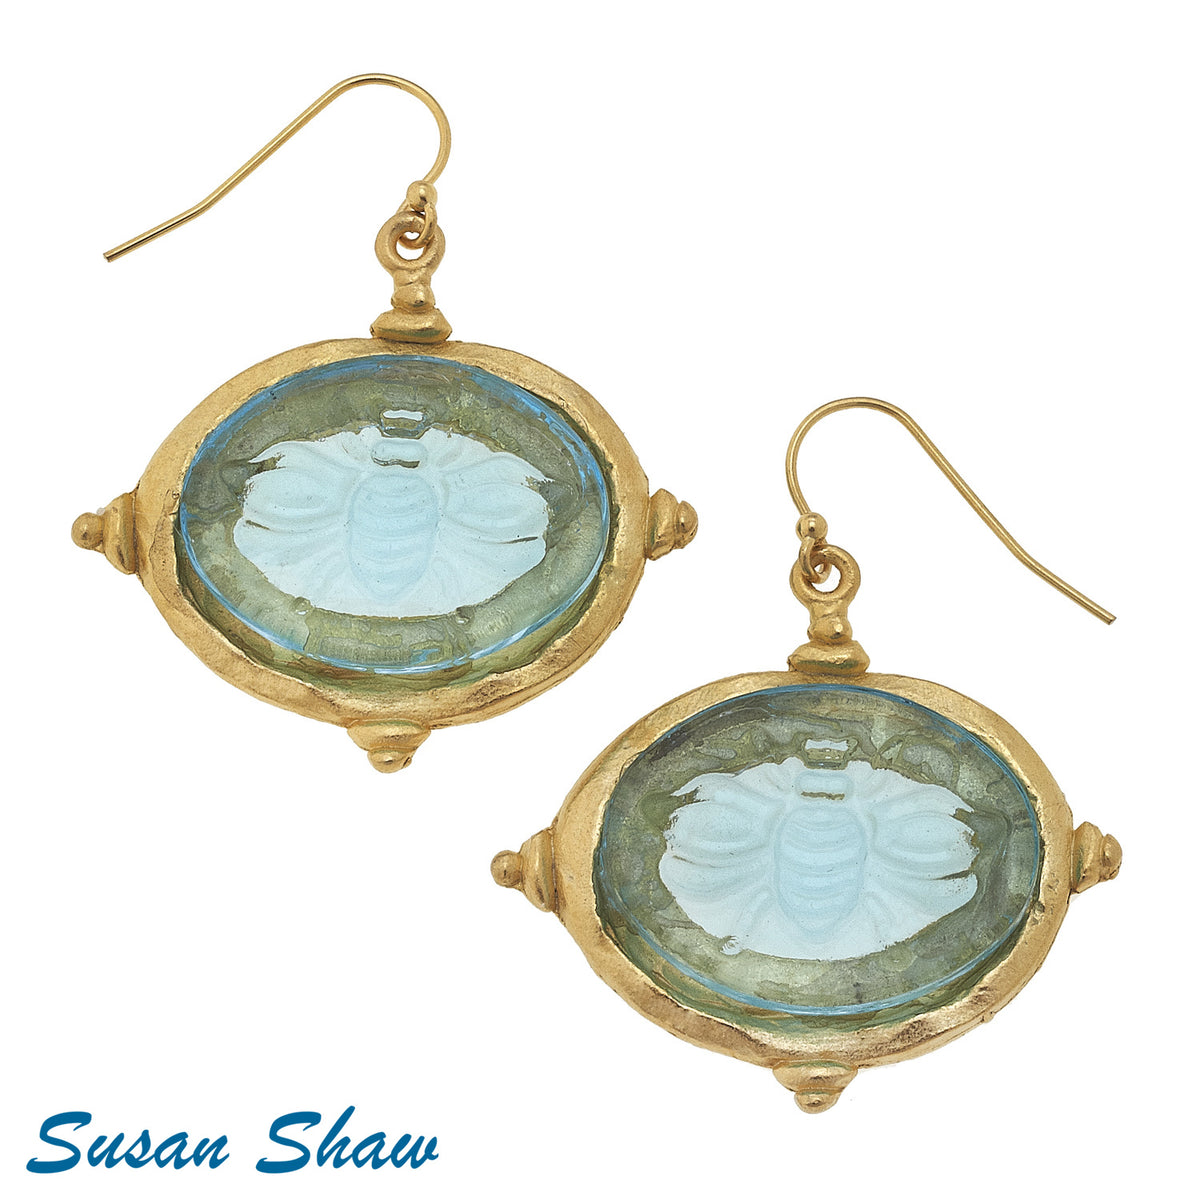 Susan Shaw Earrings: Aqua Venetian Glass Bee & Gold